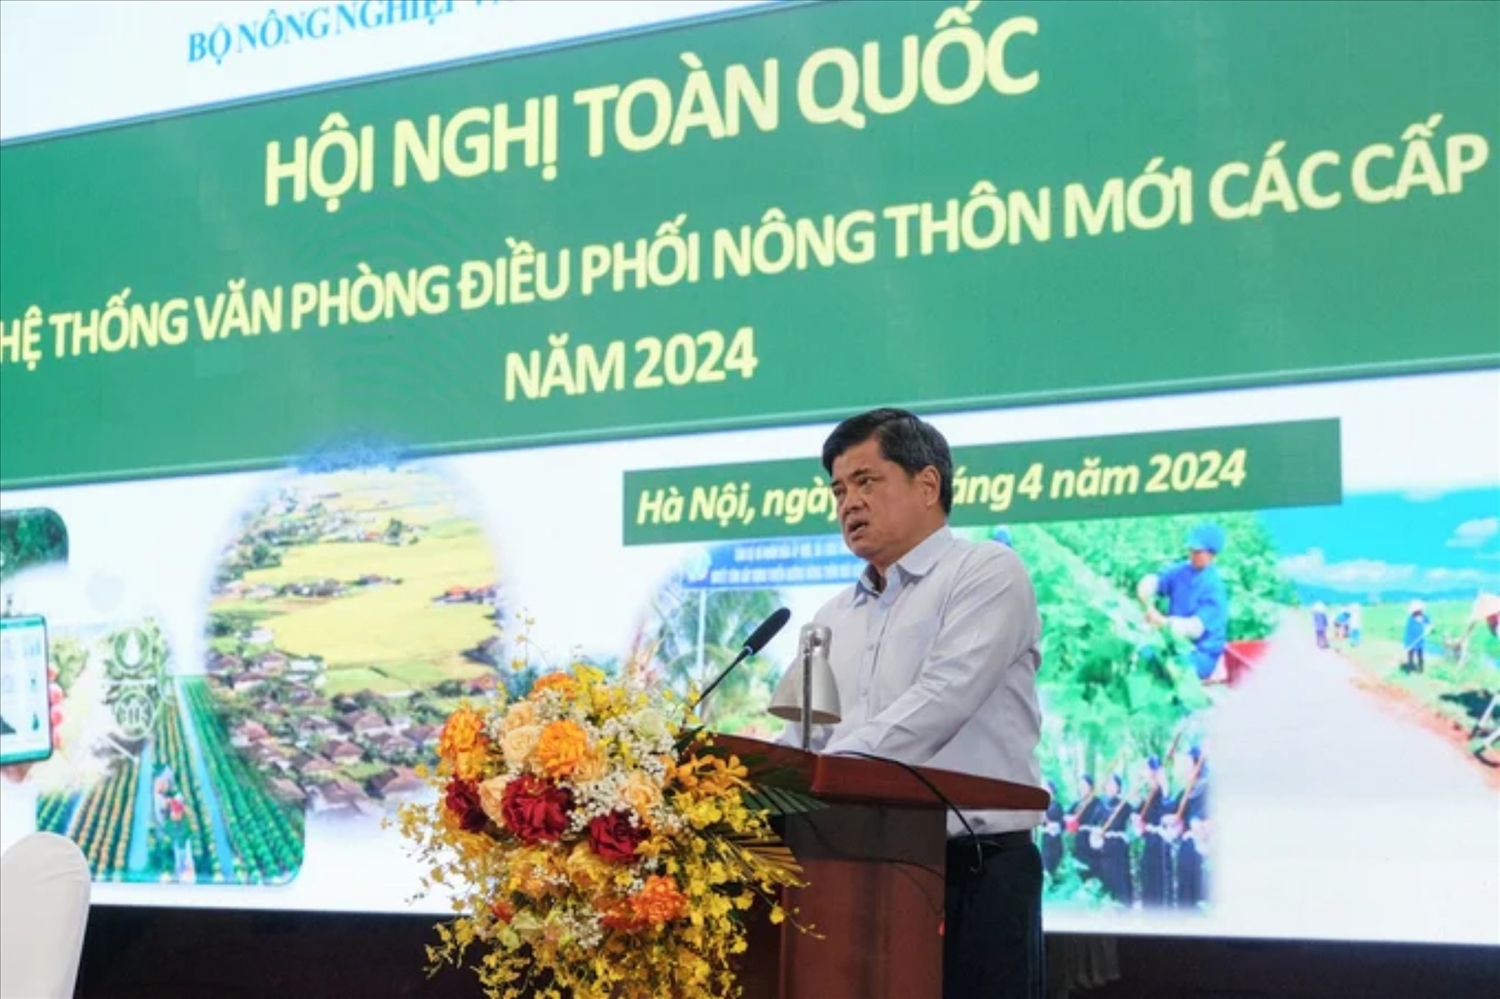 Ông Trần Thanh Nam, Thứ trưởng Bộ Nông nghiệp và Phát triển nông thôn phát biểu tại Hội nghị